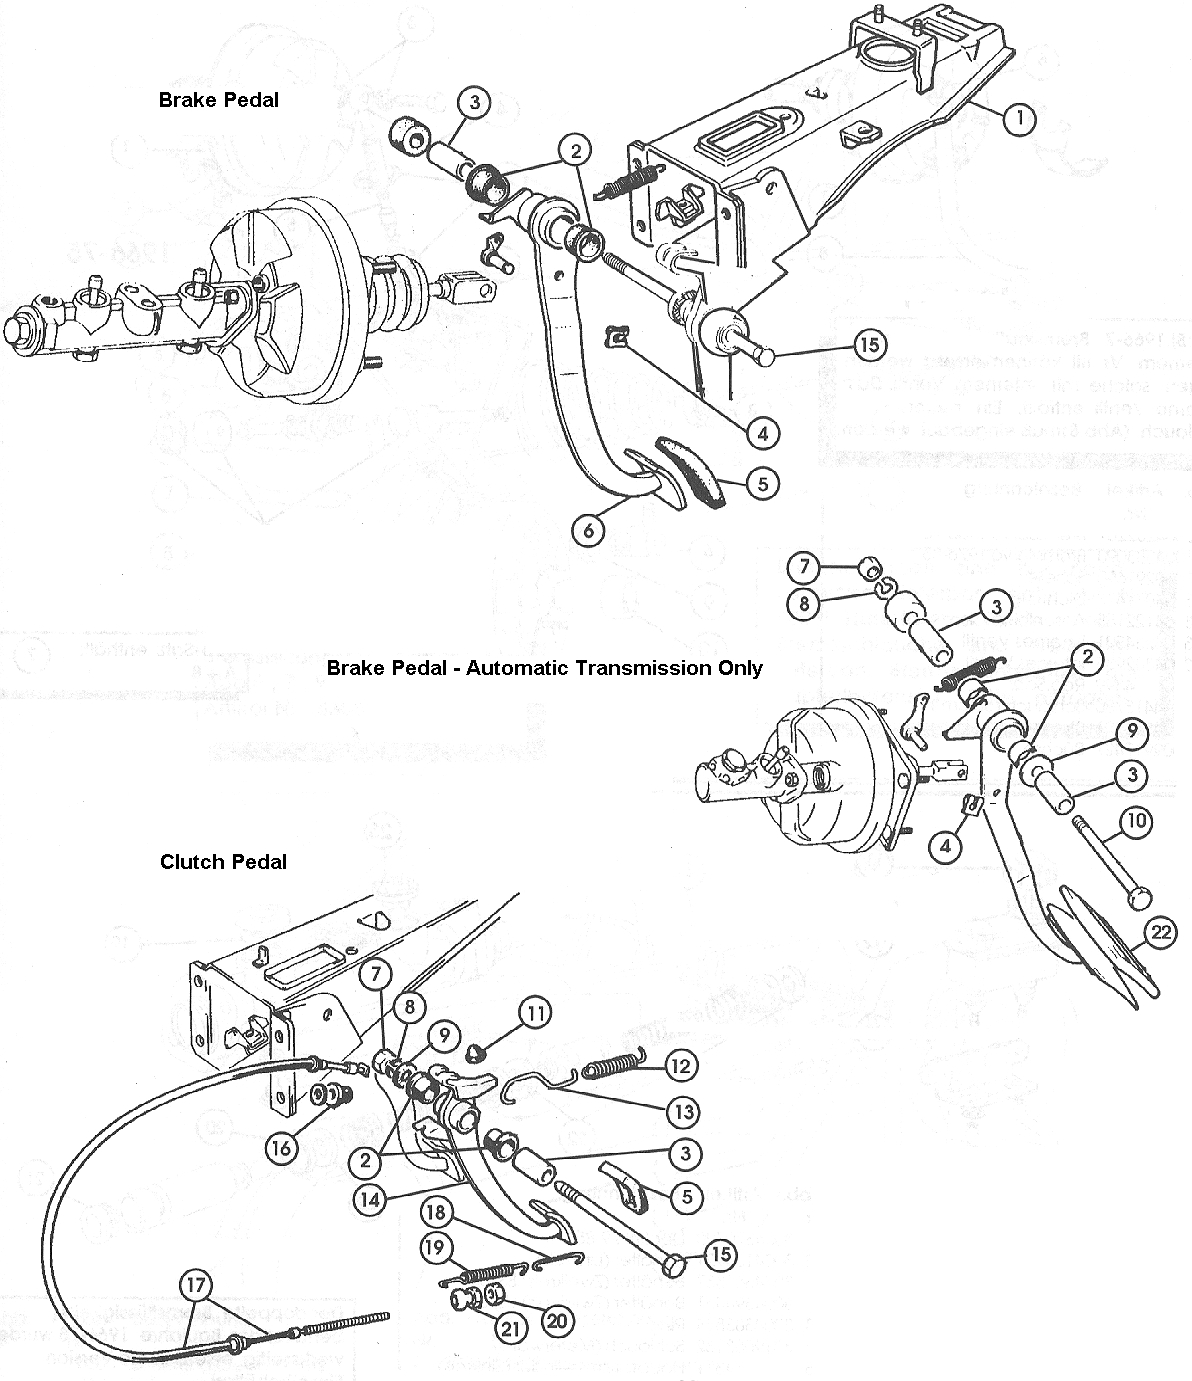 Brake & Clutch Pedals